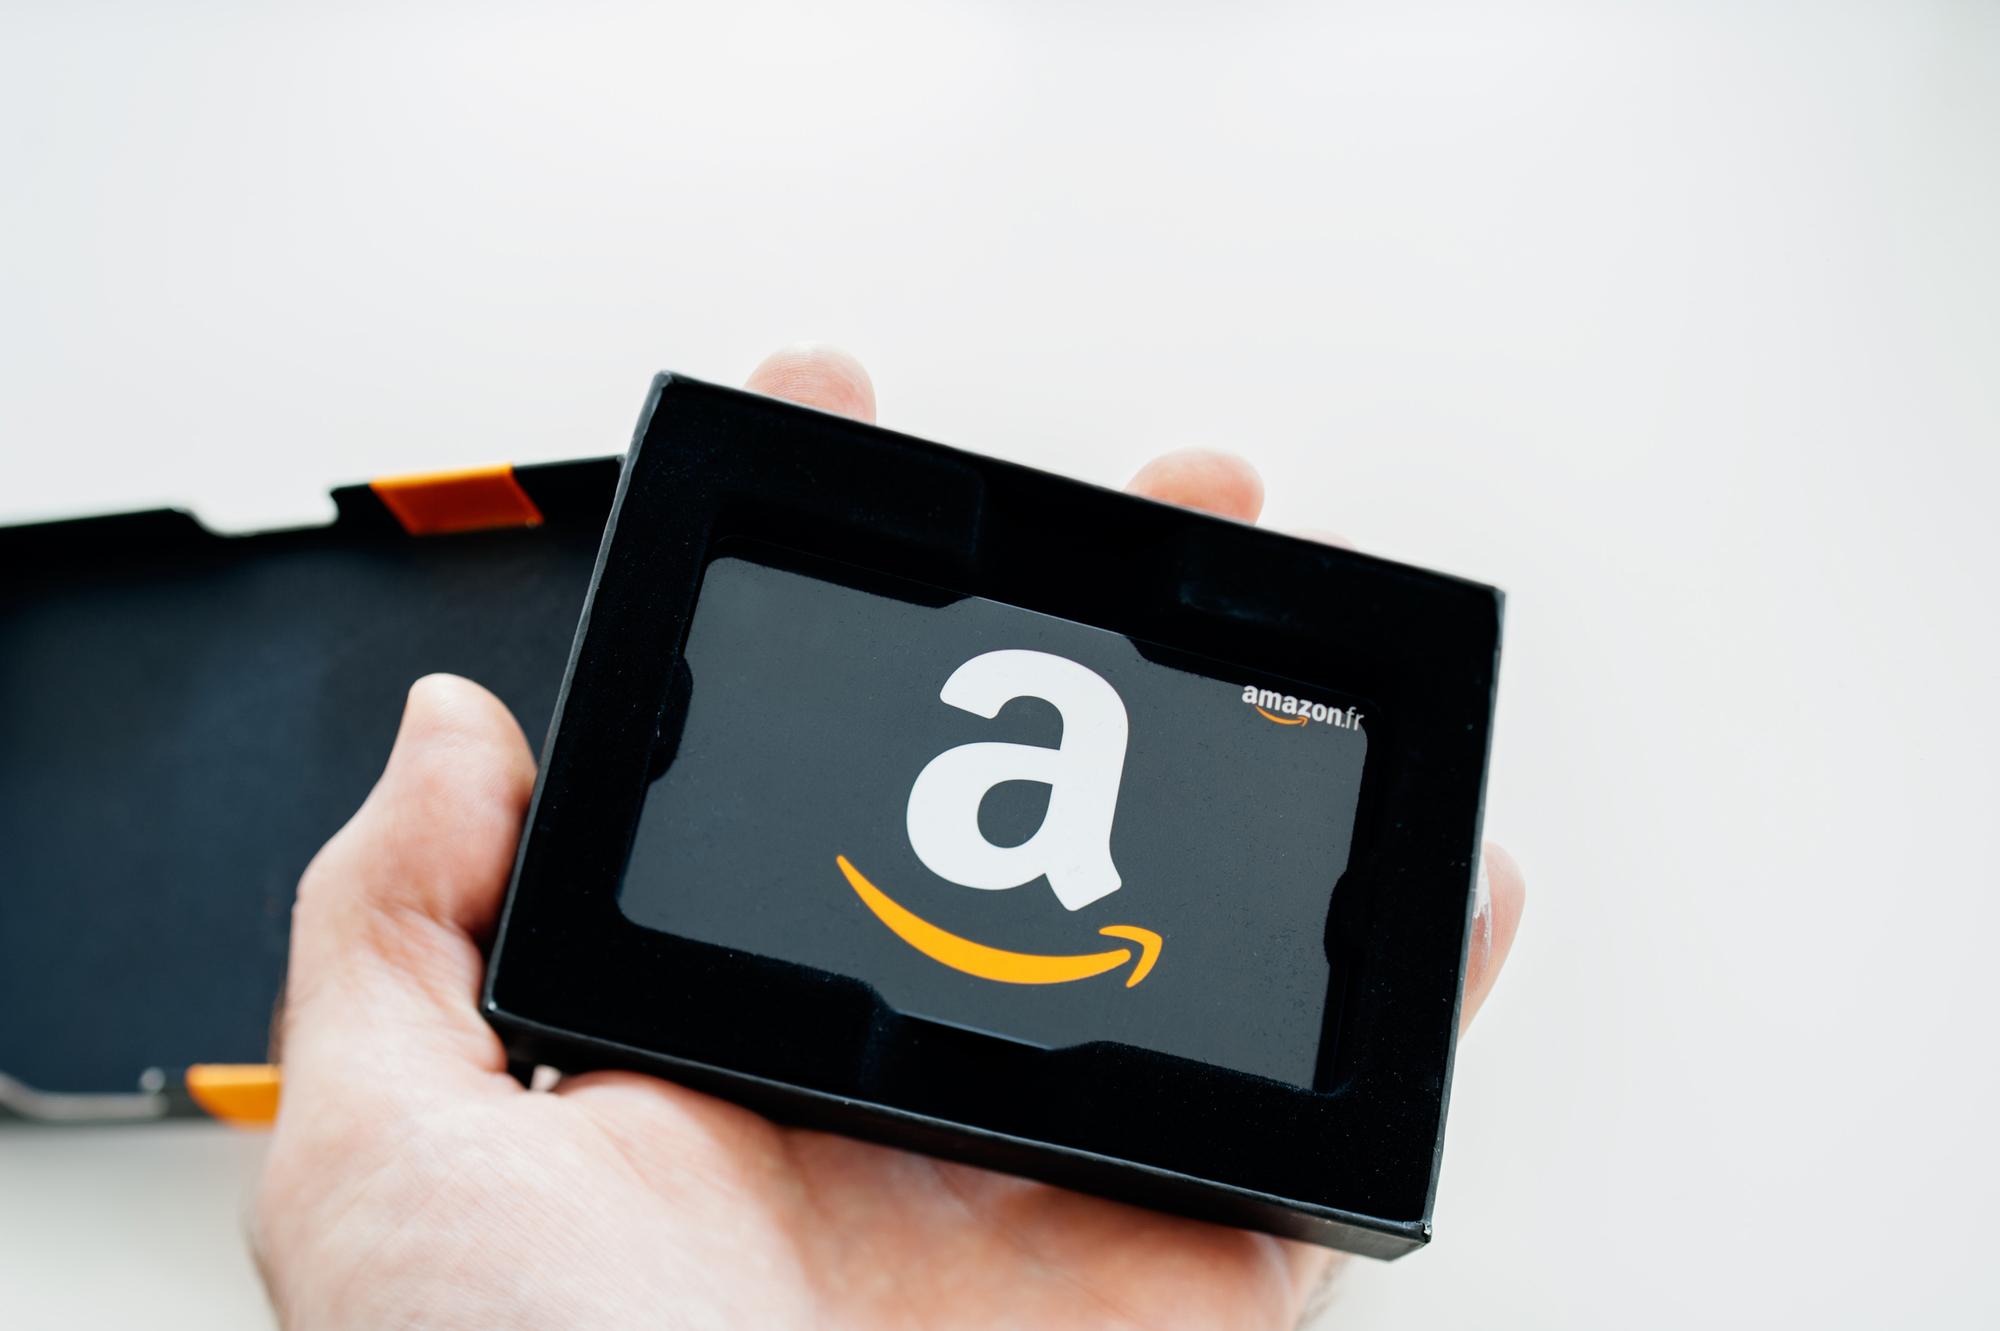 4 Best Ways to Save Money on Amazon 3 | Mycashback.net